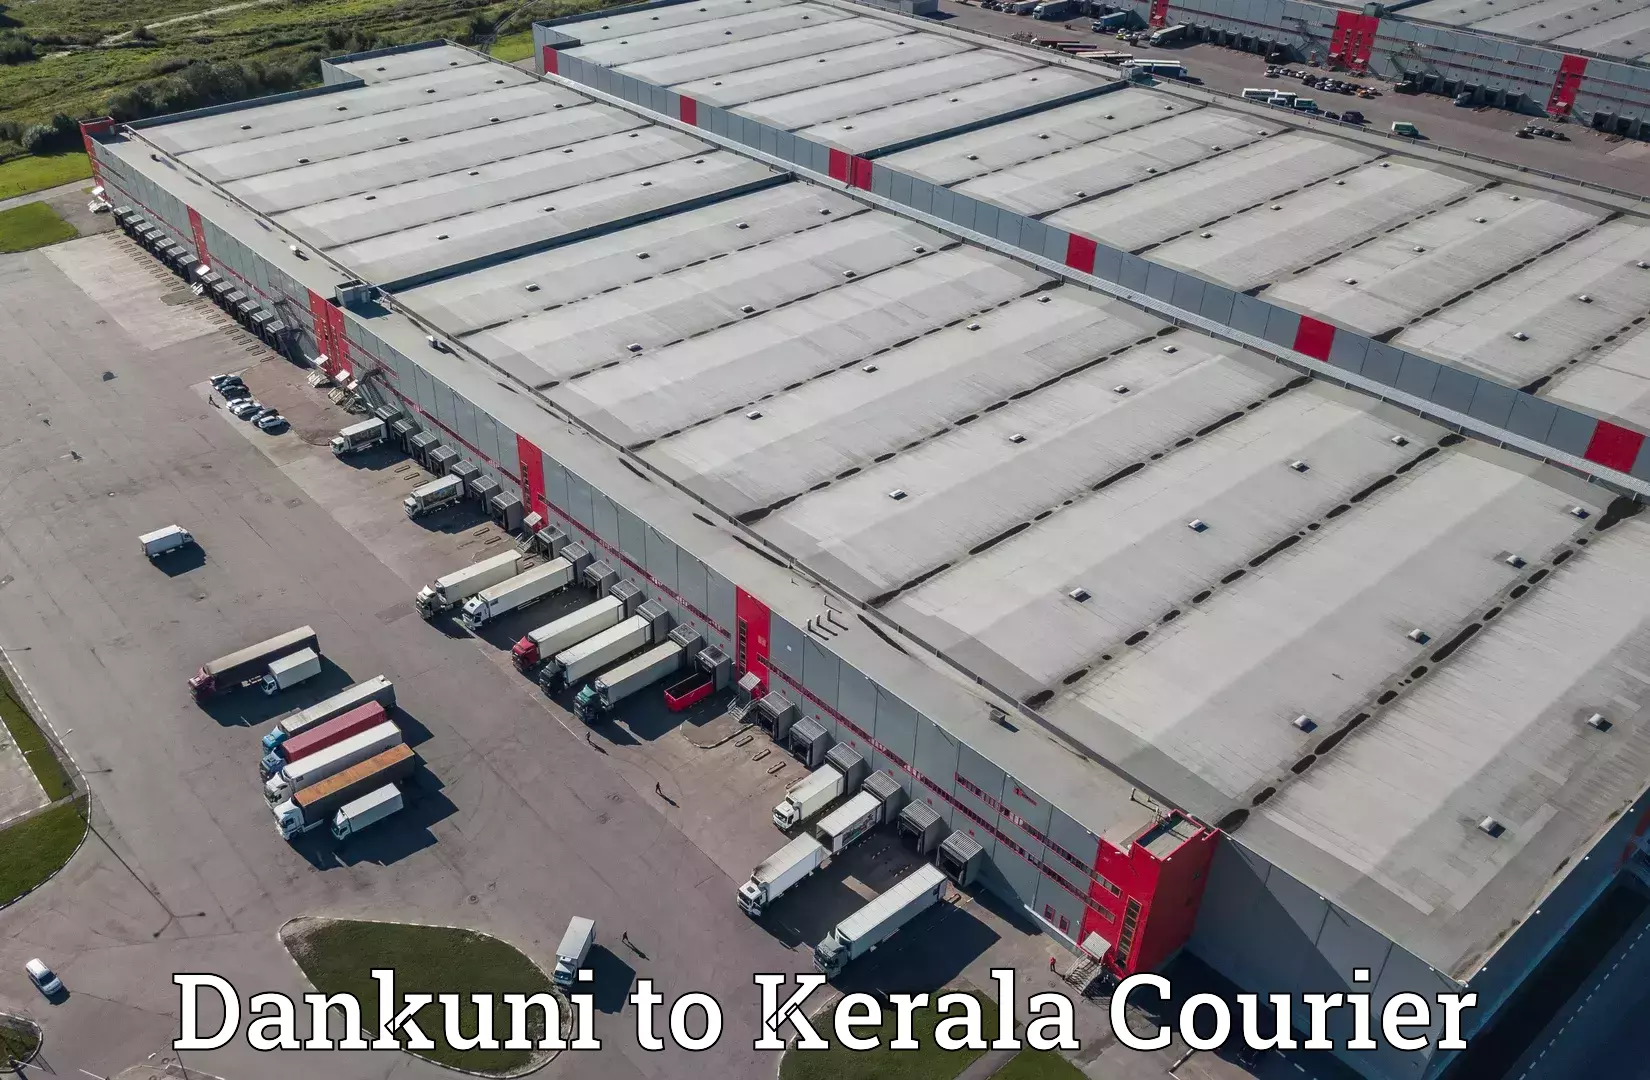 Secure packaging in Dankuni to Kerala